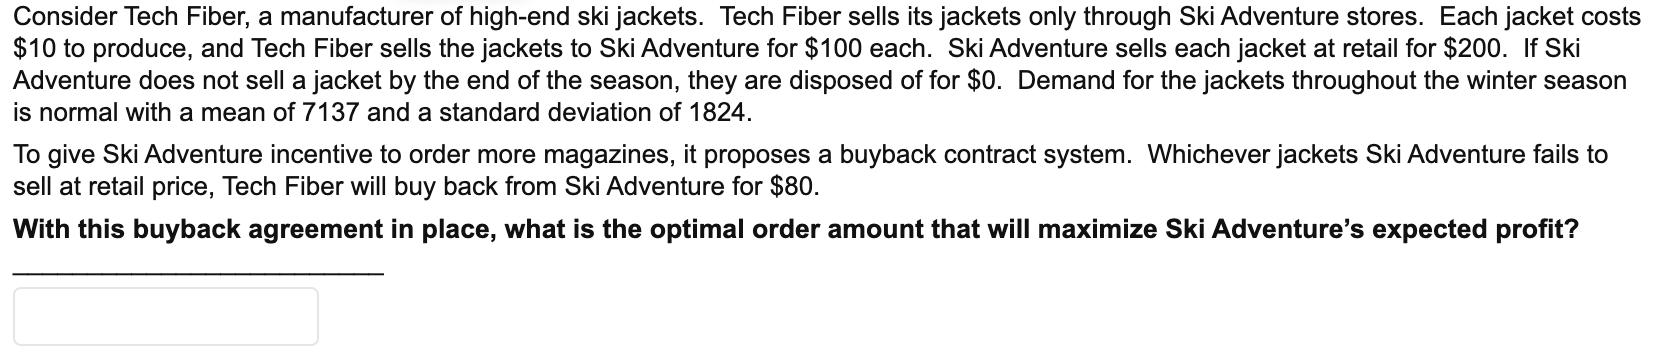 Consider Tech Fiber, a manufacturer of high-end ski jackets. Tech Fiber sells its jackets only through Ski